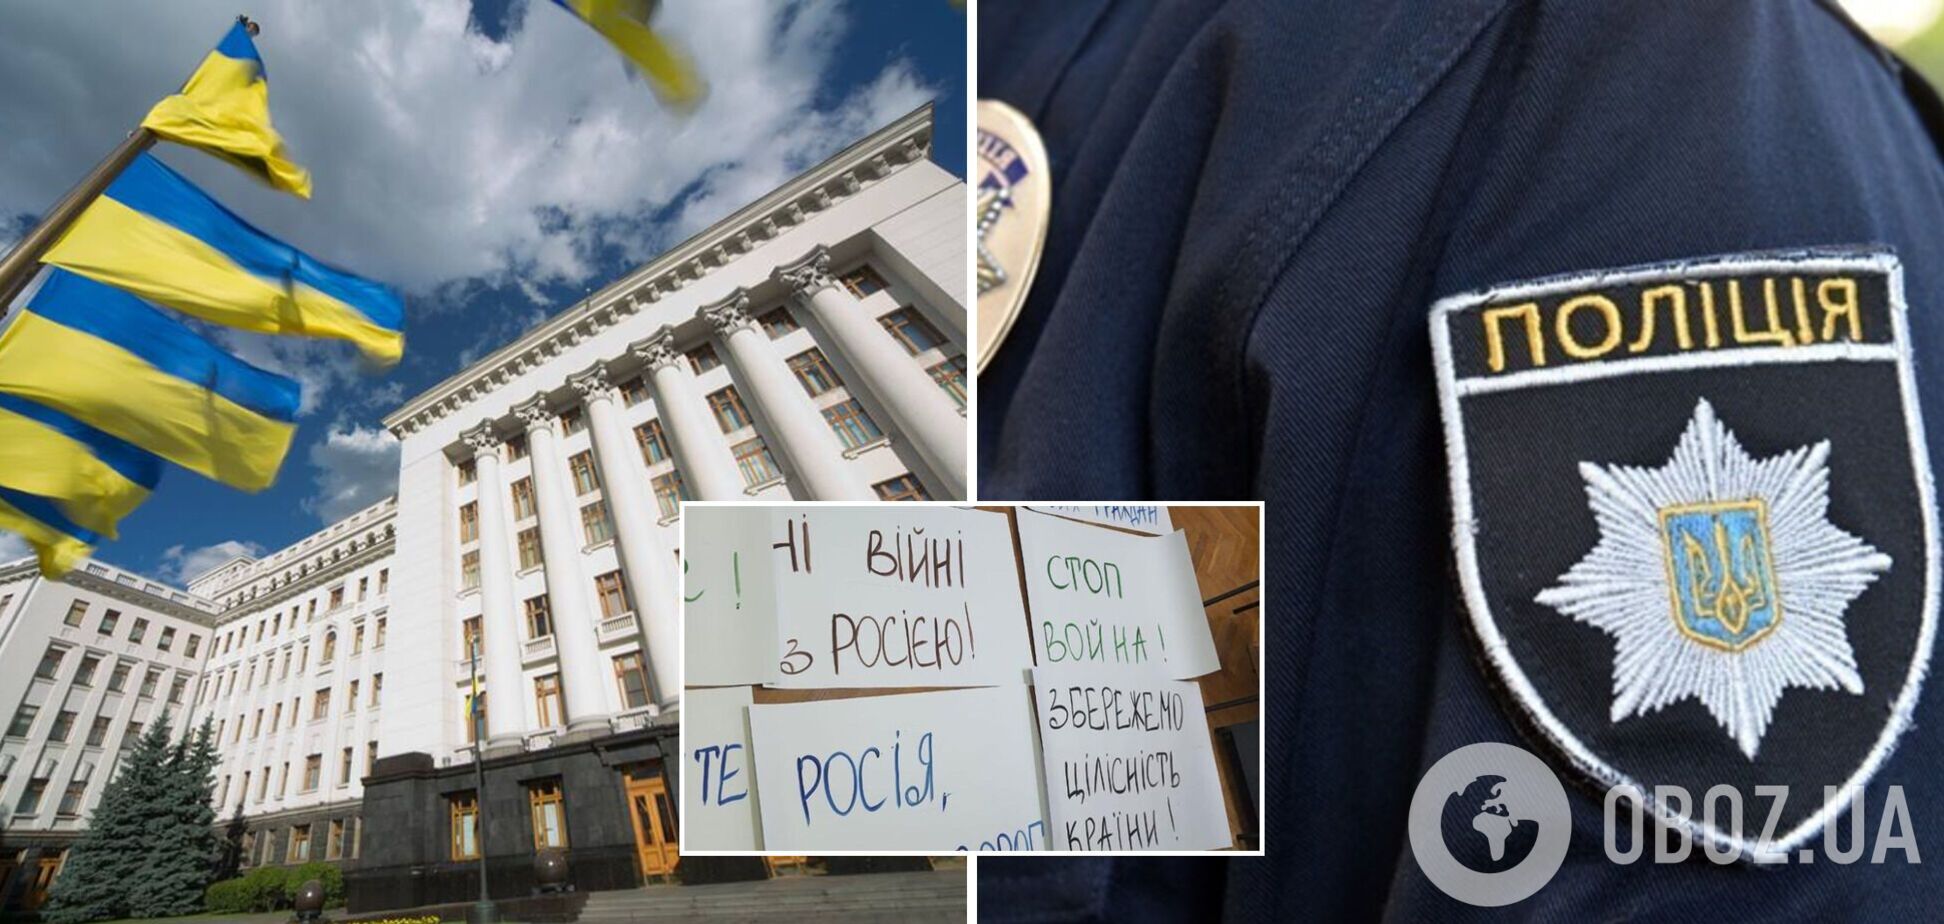 Нацполіція у Києві викрила організаторів проплаченого мітингу